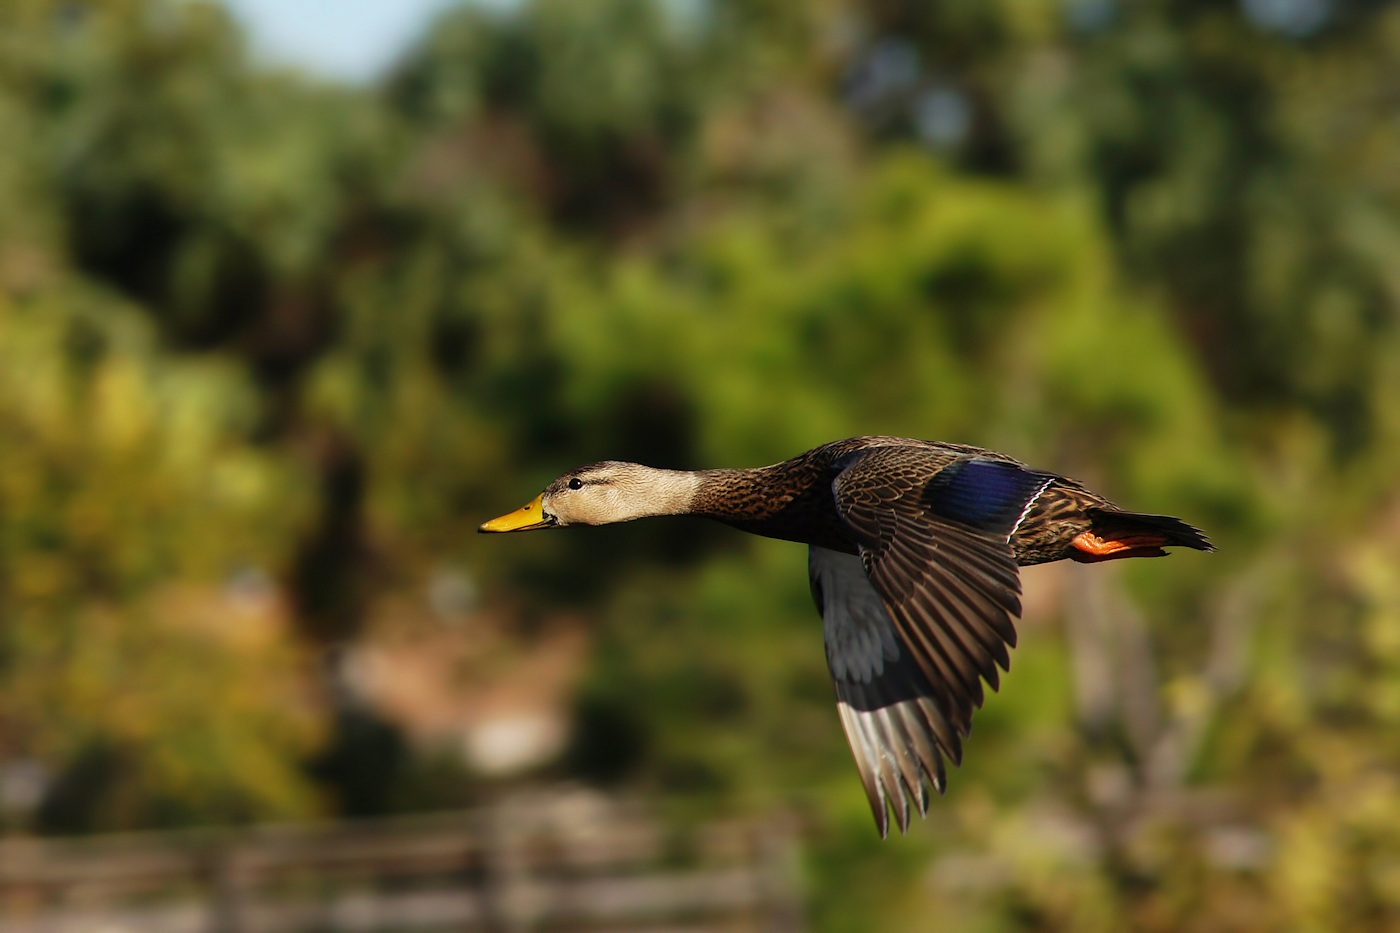 Mottled duck in flight